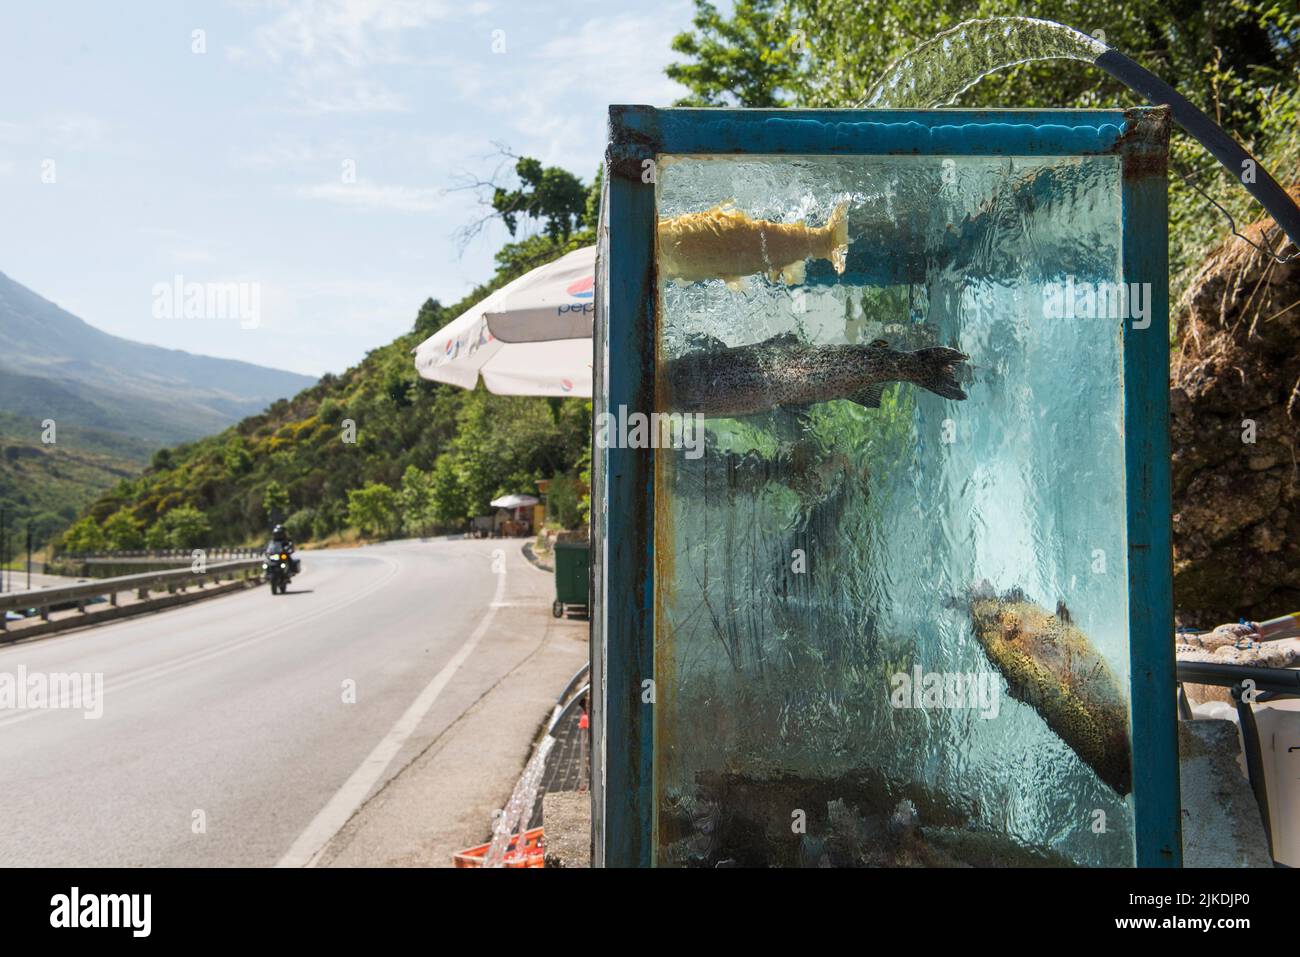 Lebende Forellen in einem Aquarium, Haltestelle am Straßenrand, zwischen Saranda und Gjirokaster, wo lokale Produkte verkauft werden, Albanien, Südosteuropa. Stockfoto